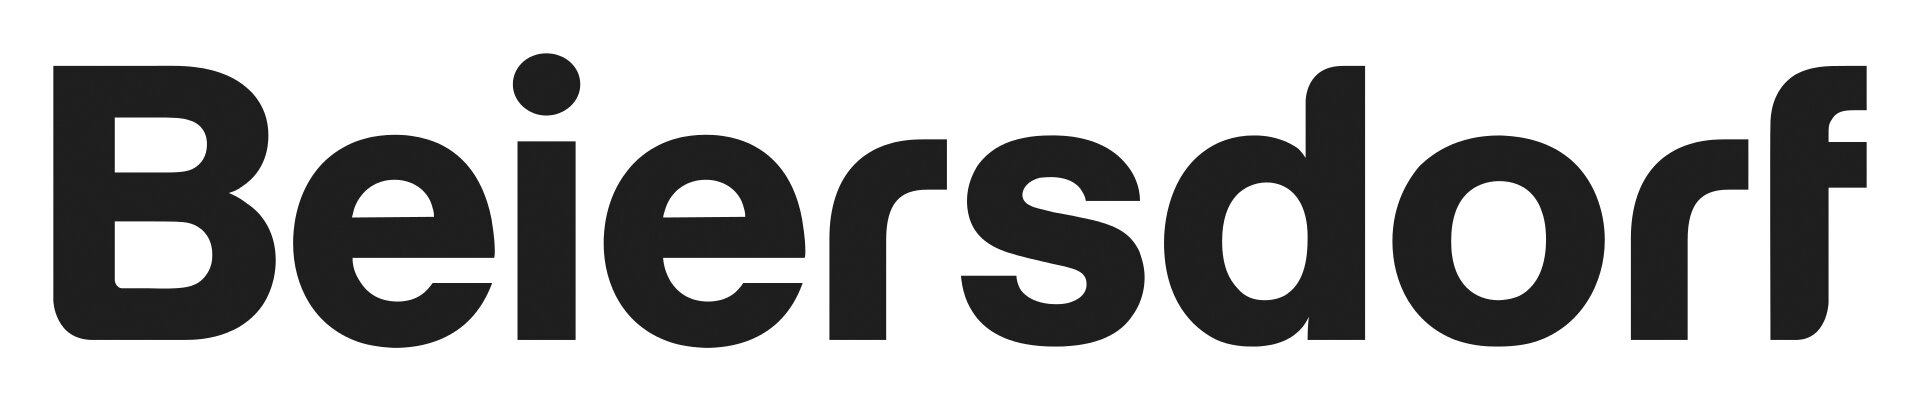 Beiersdorf_Logo.svg Kopie.jpg